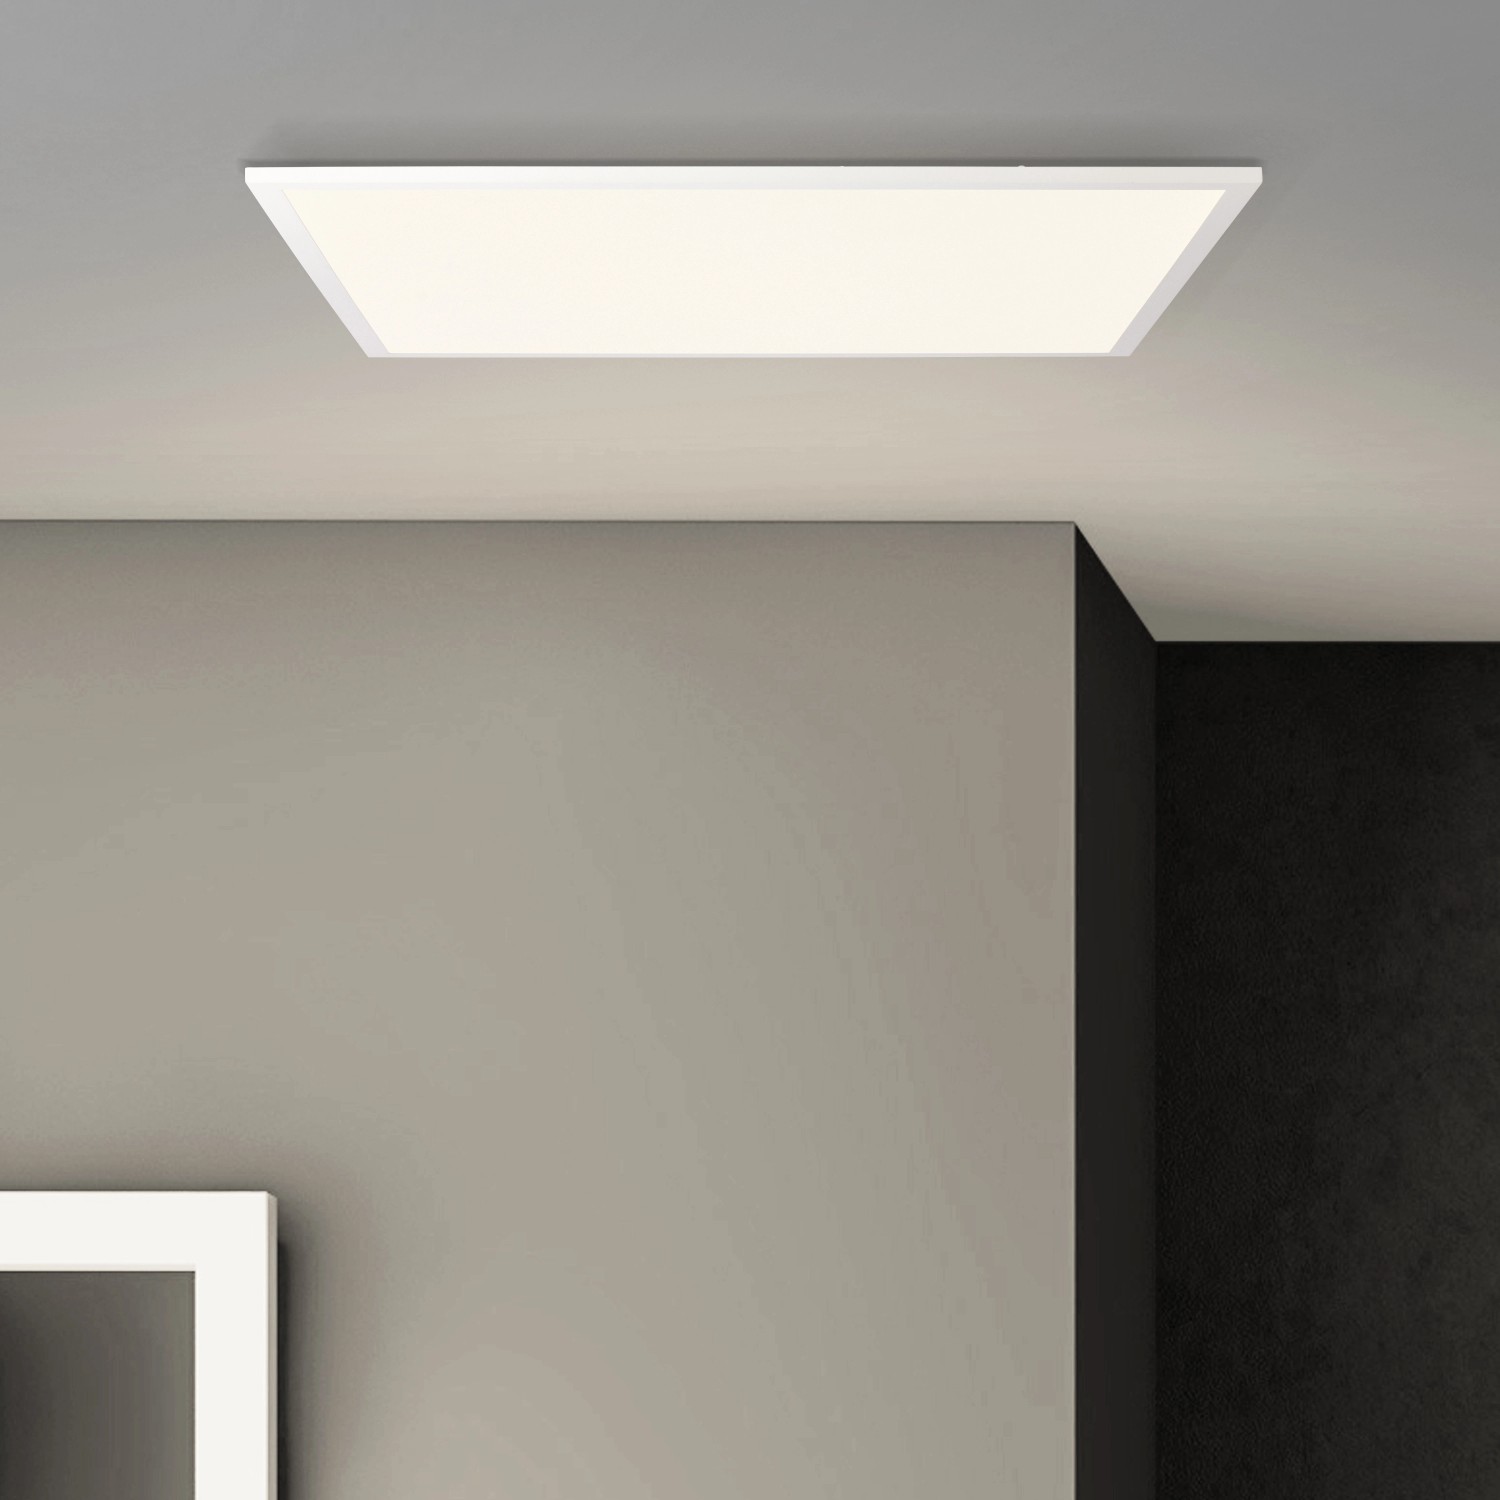 Brilliant LED-Deckenaufbau-Paneel Buffi Eckig 60 cm x 60 cm Weiß Warmweiß